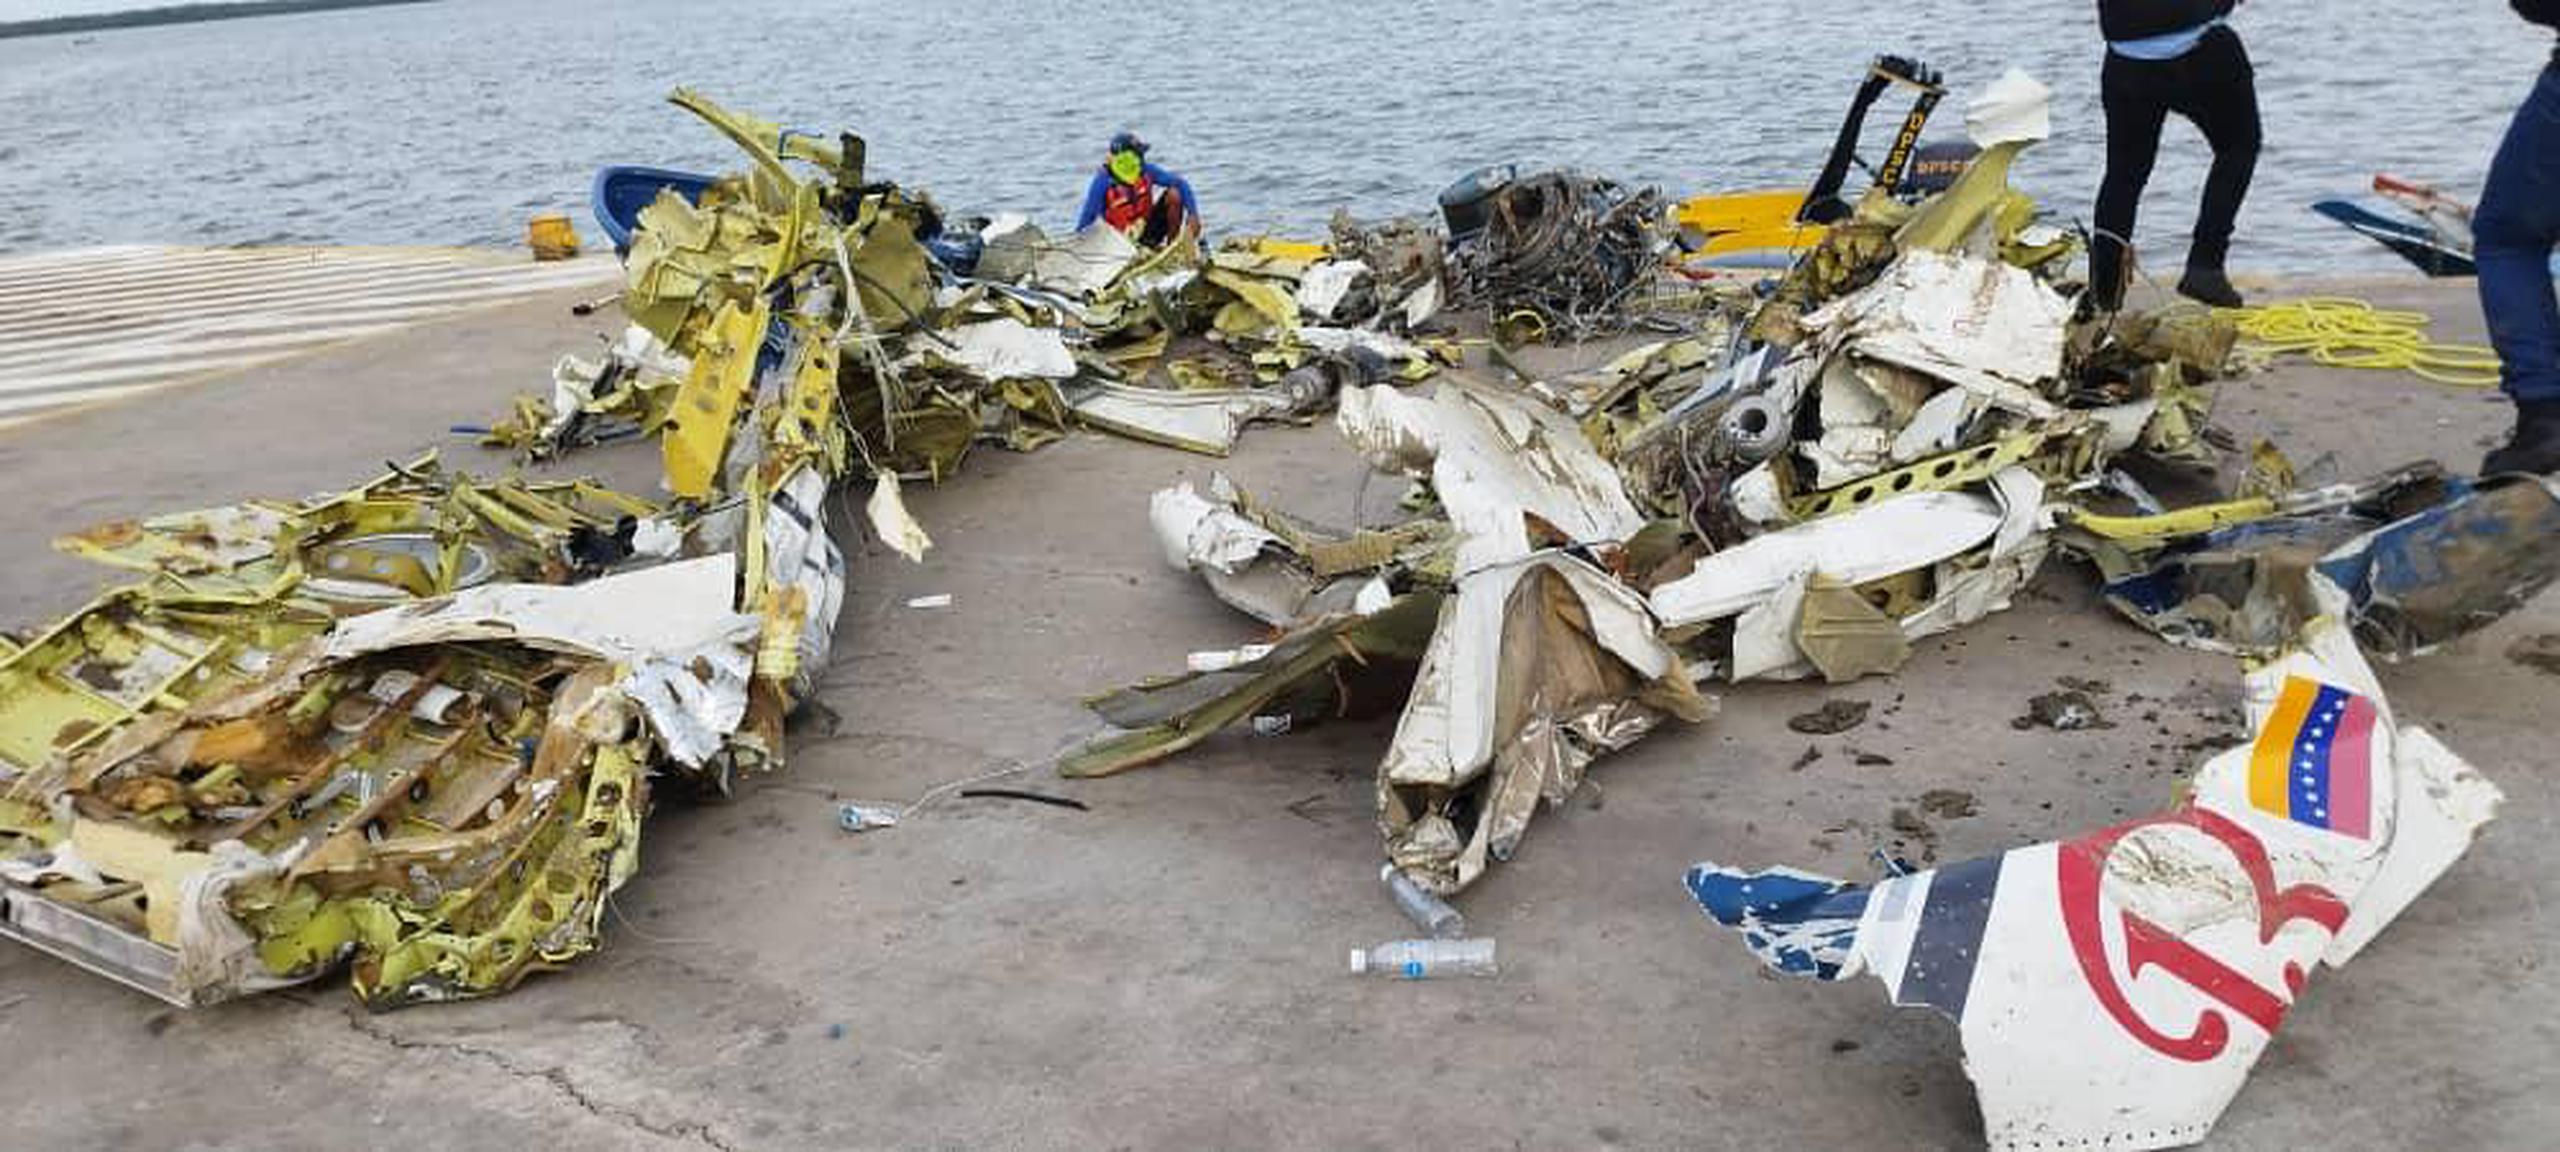 El alcalde del municipio Almirante Padilla (Zulia), dijo que realizan un "operativo sin precedentes" de búsqueda en la localidad, con una treintena de embarcaciones y el despliegue de unas 150 personas.